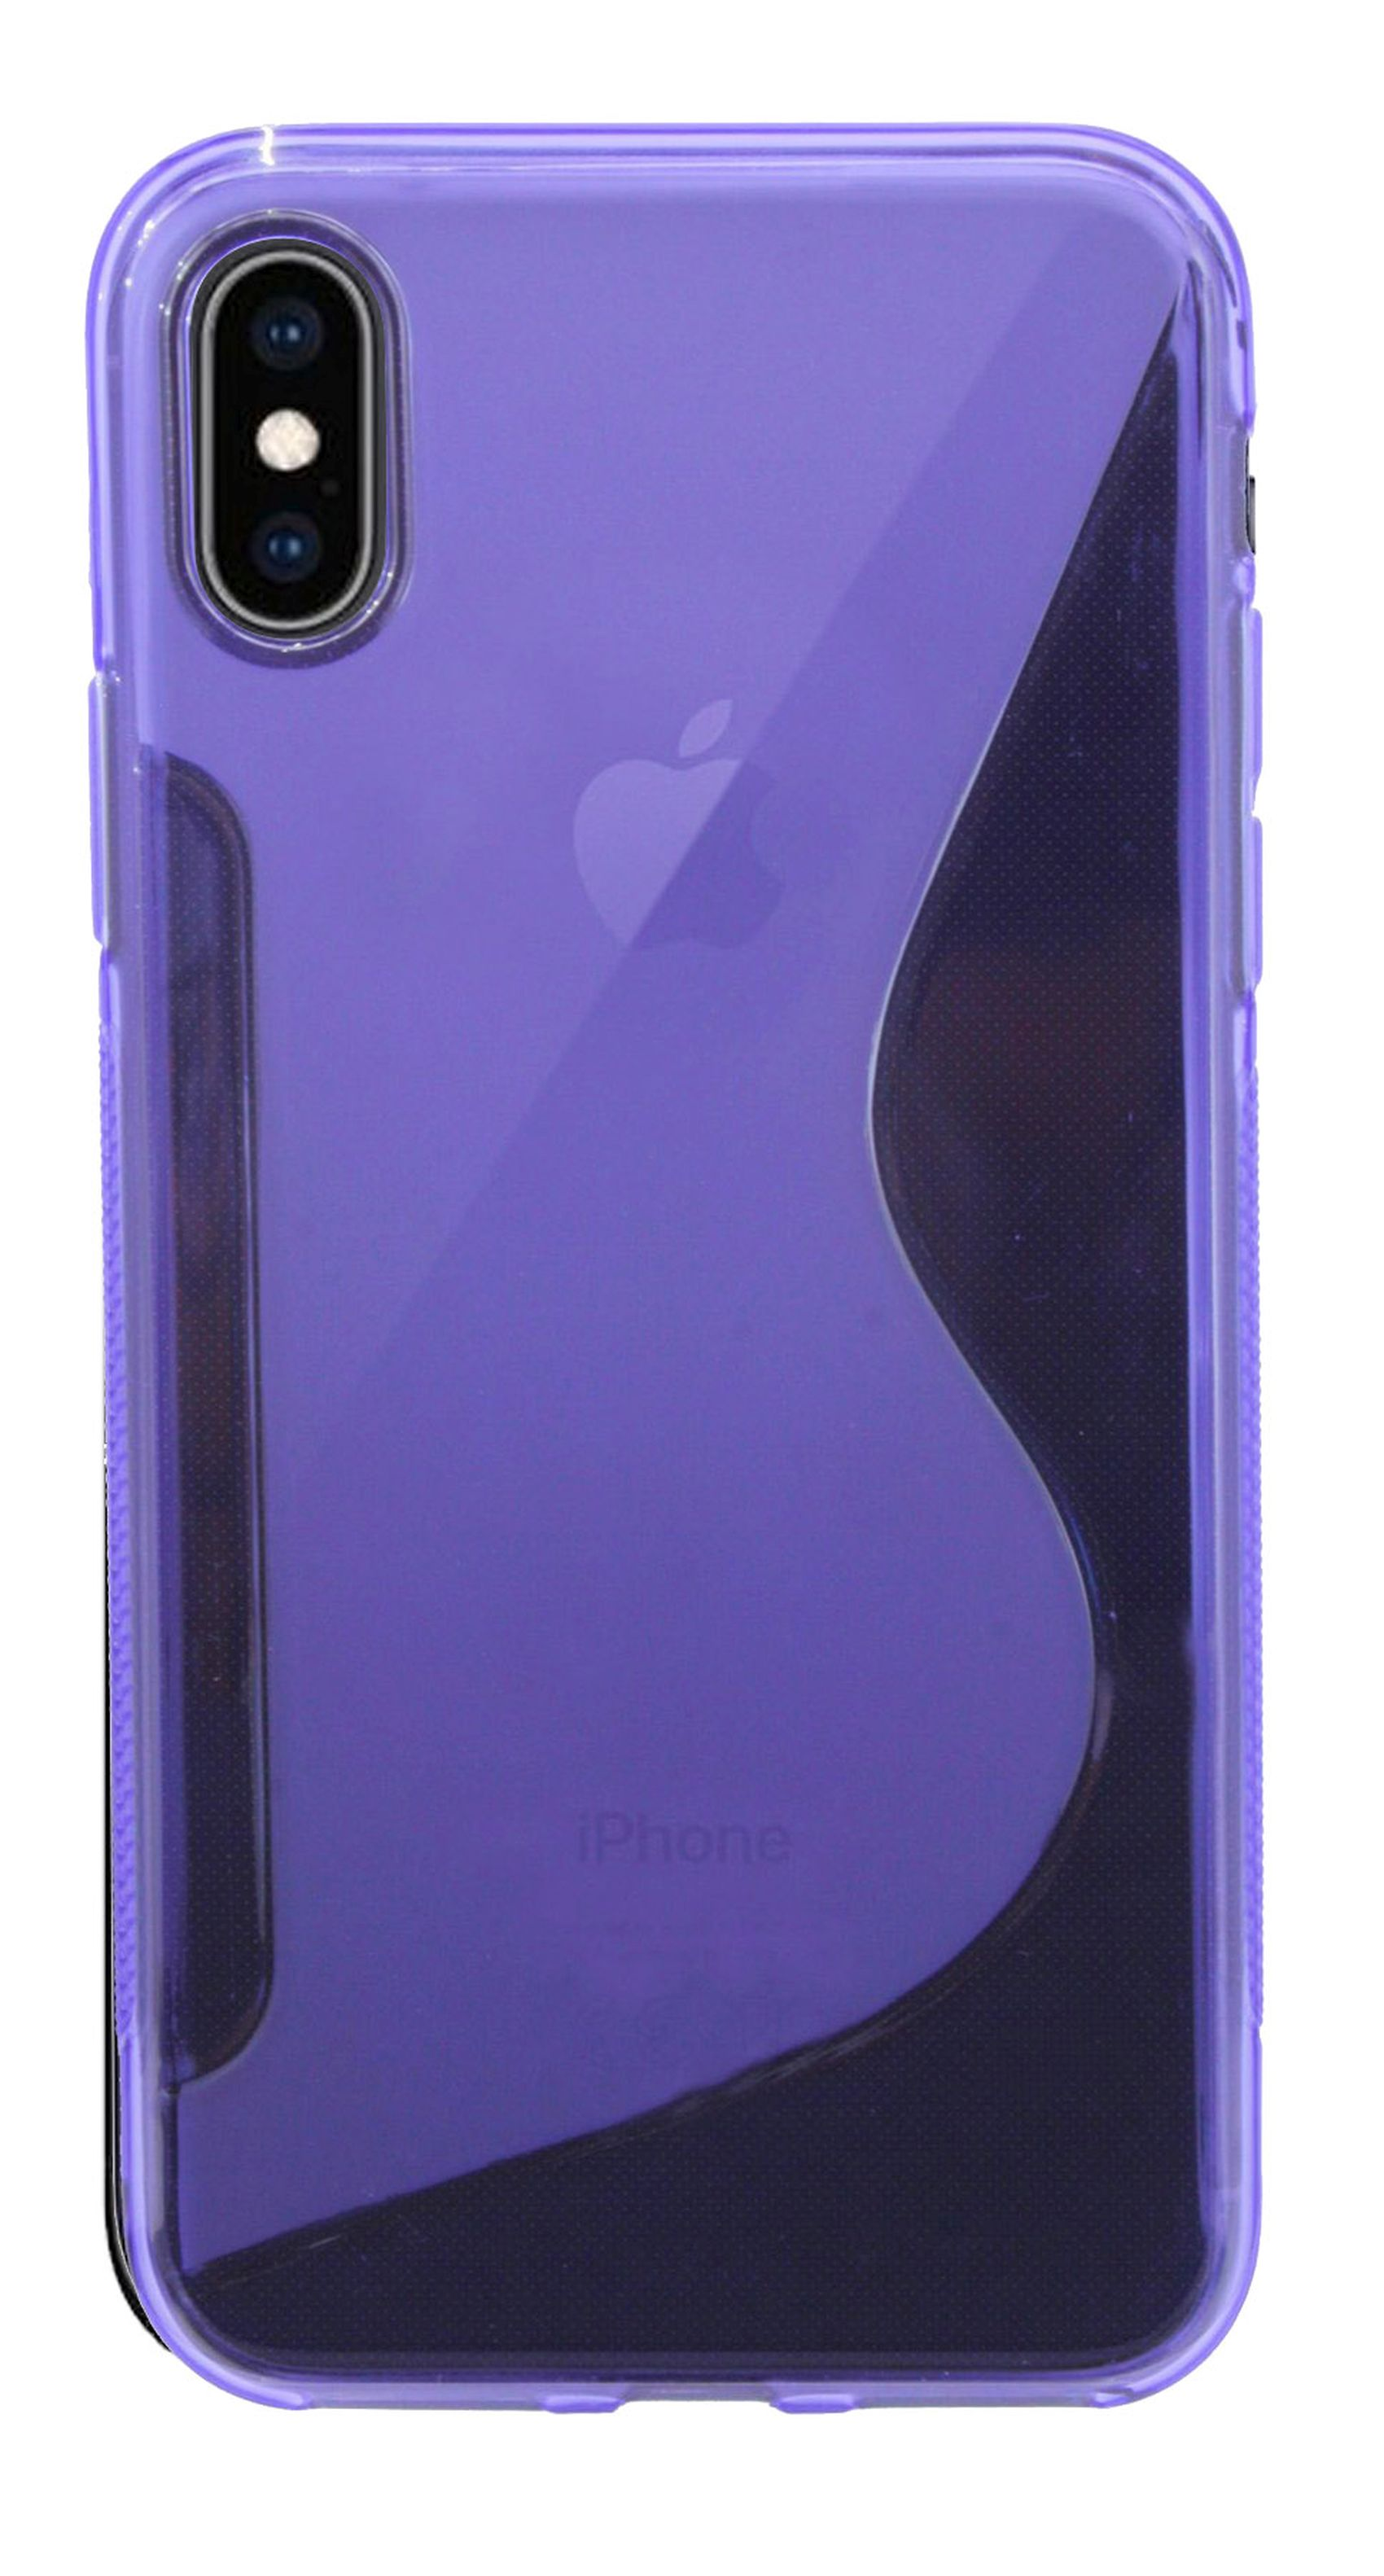 XS S-Line Bumper, Max, Apple, COFI Violett Cover, iPhone